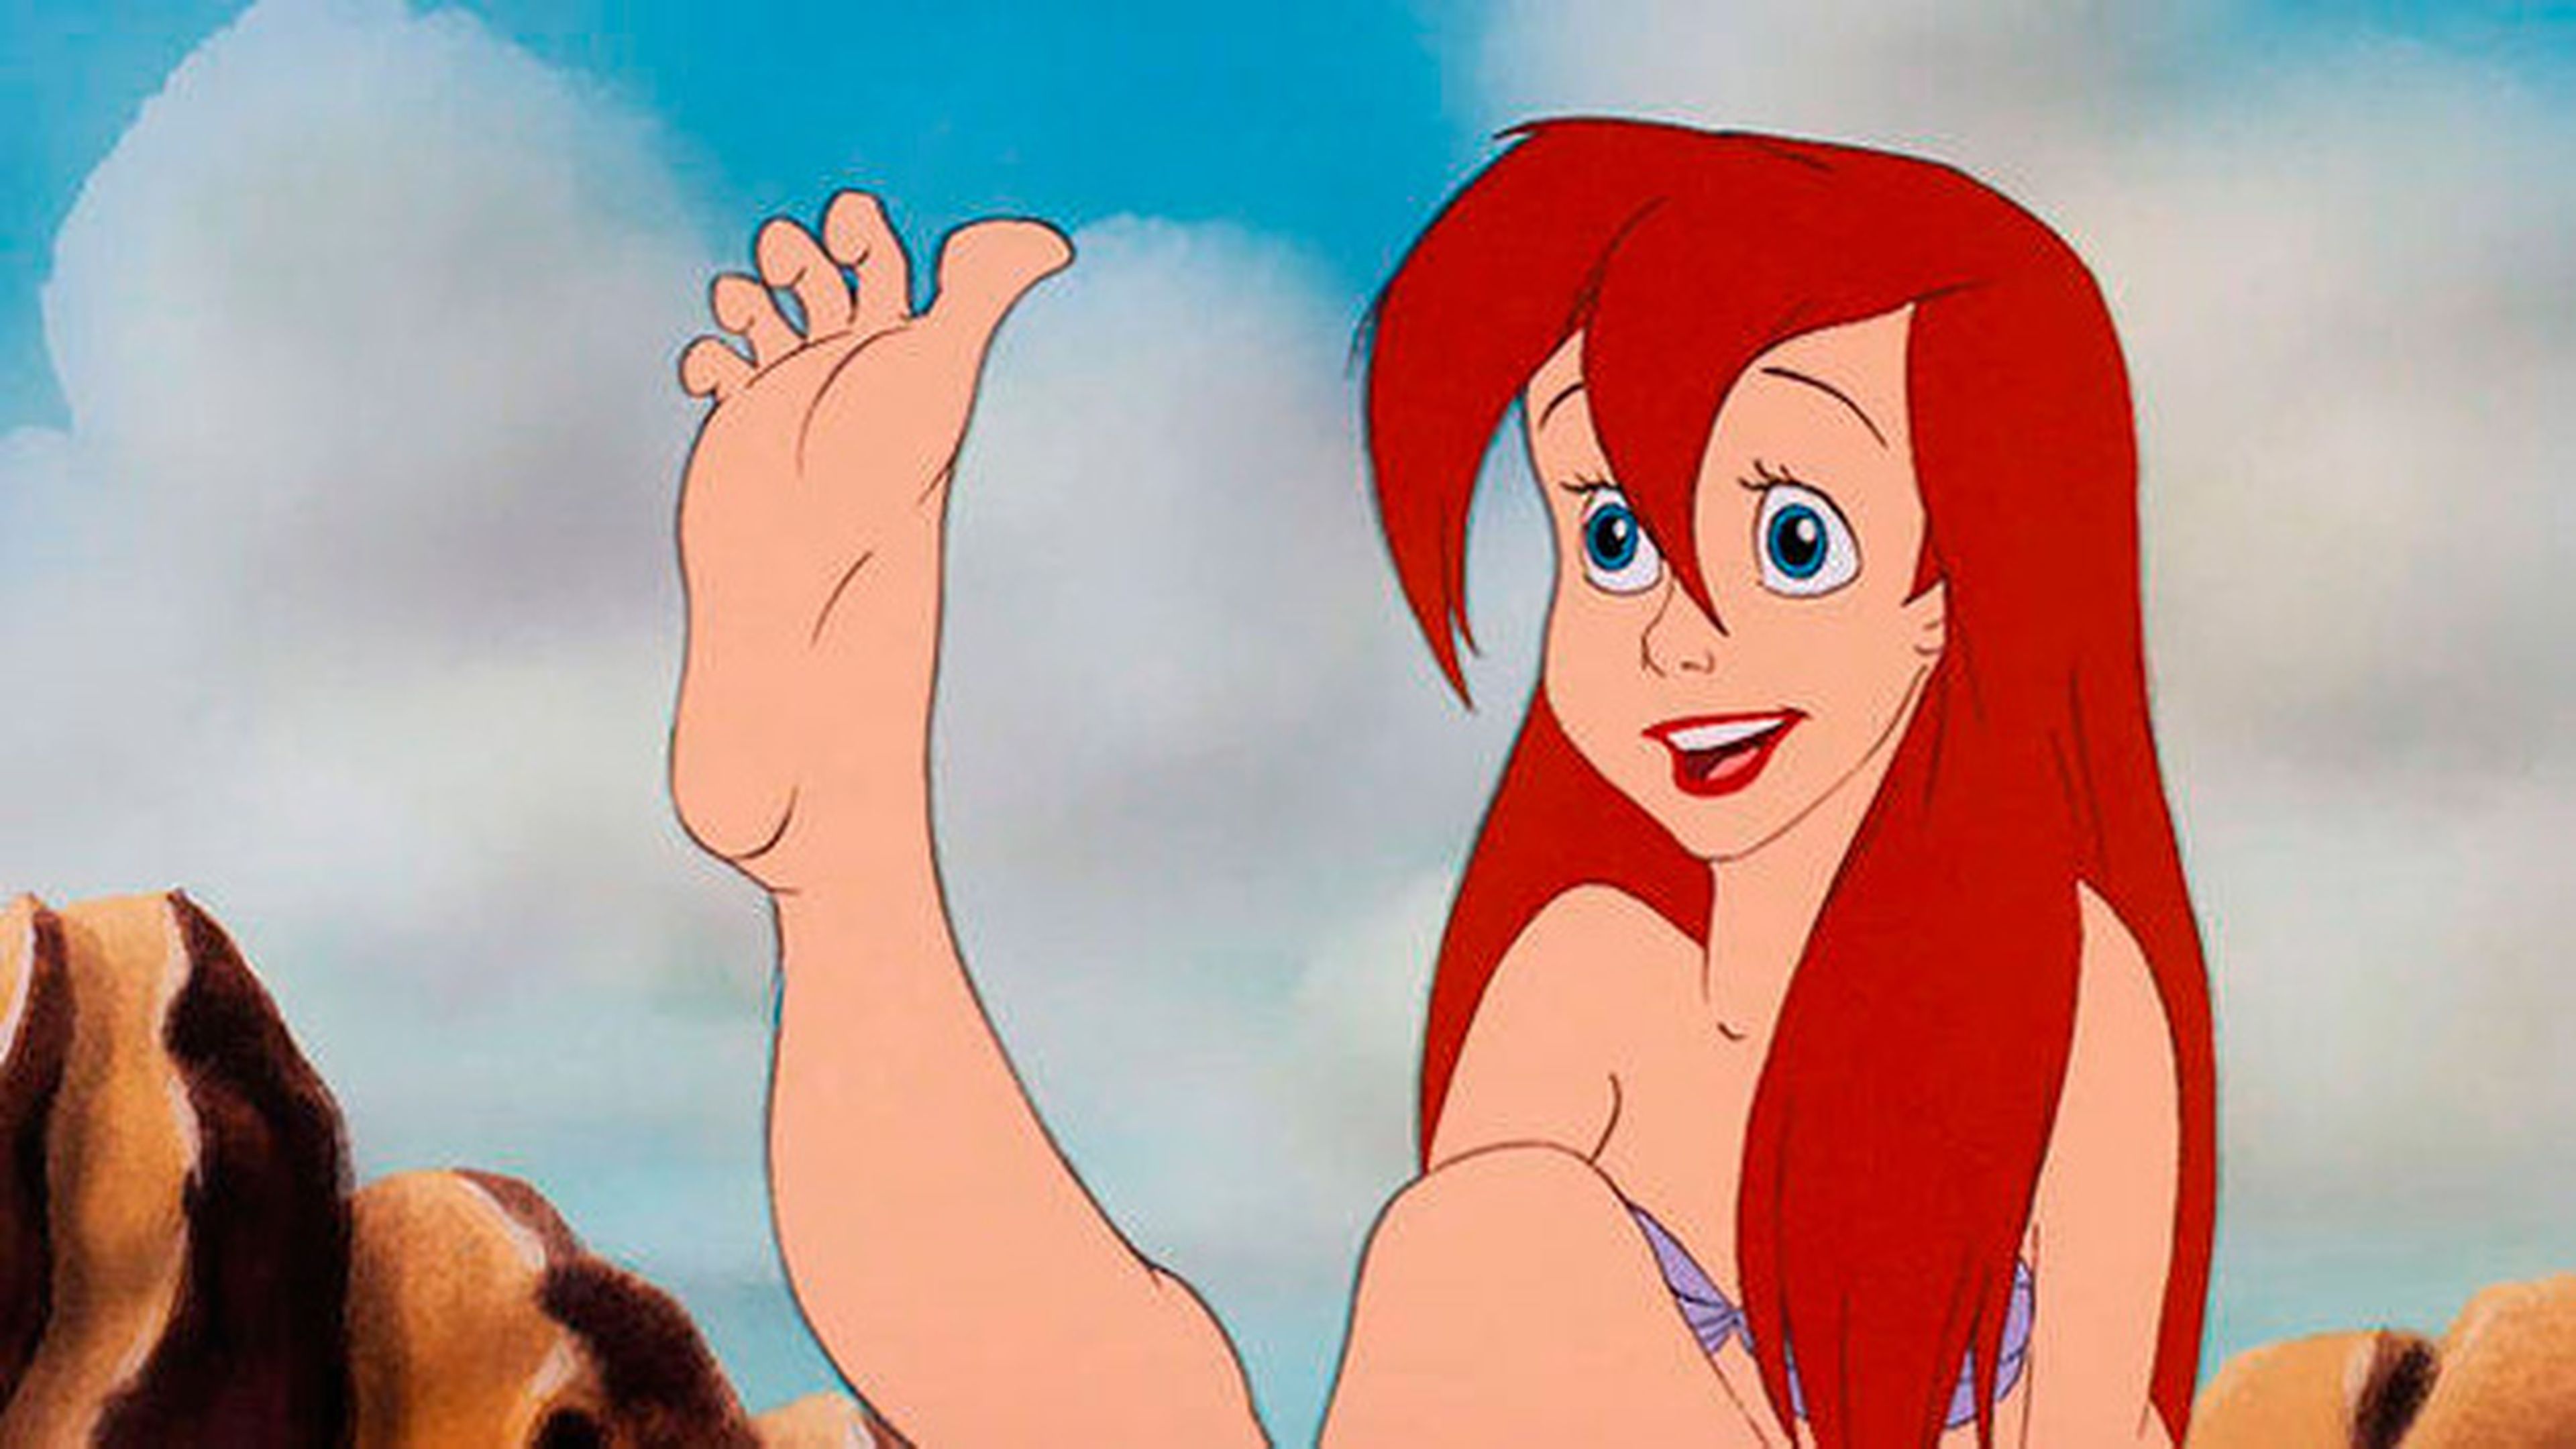 La Sirenita - Disney piensa en hacer una película de imagen real